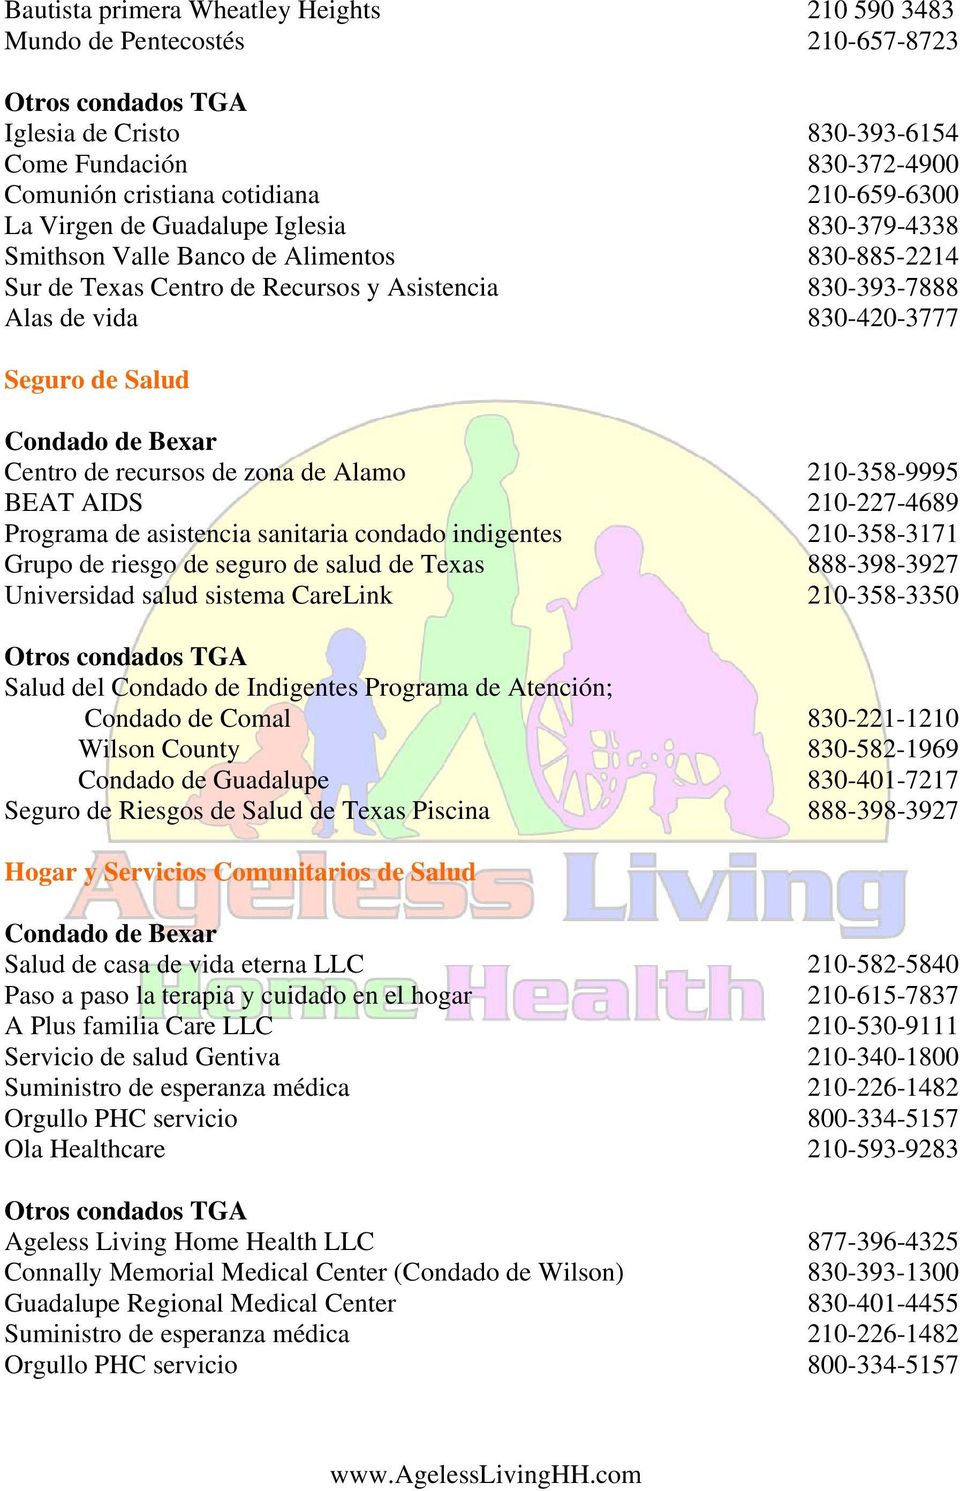 210-227-4689 Programa de asistencia sanitaria condado indigentes 210-358-3171 Grupo de riesgo de seguro de salud de Texas 888-398-3927 Universidad salud sistema CareLink 210-358-3350 Salud del